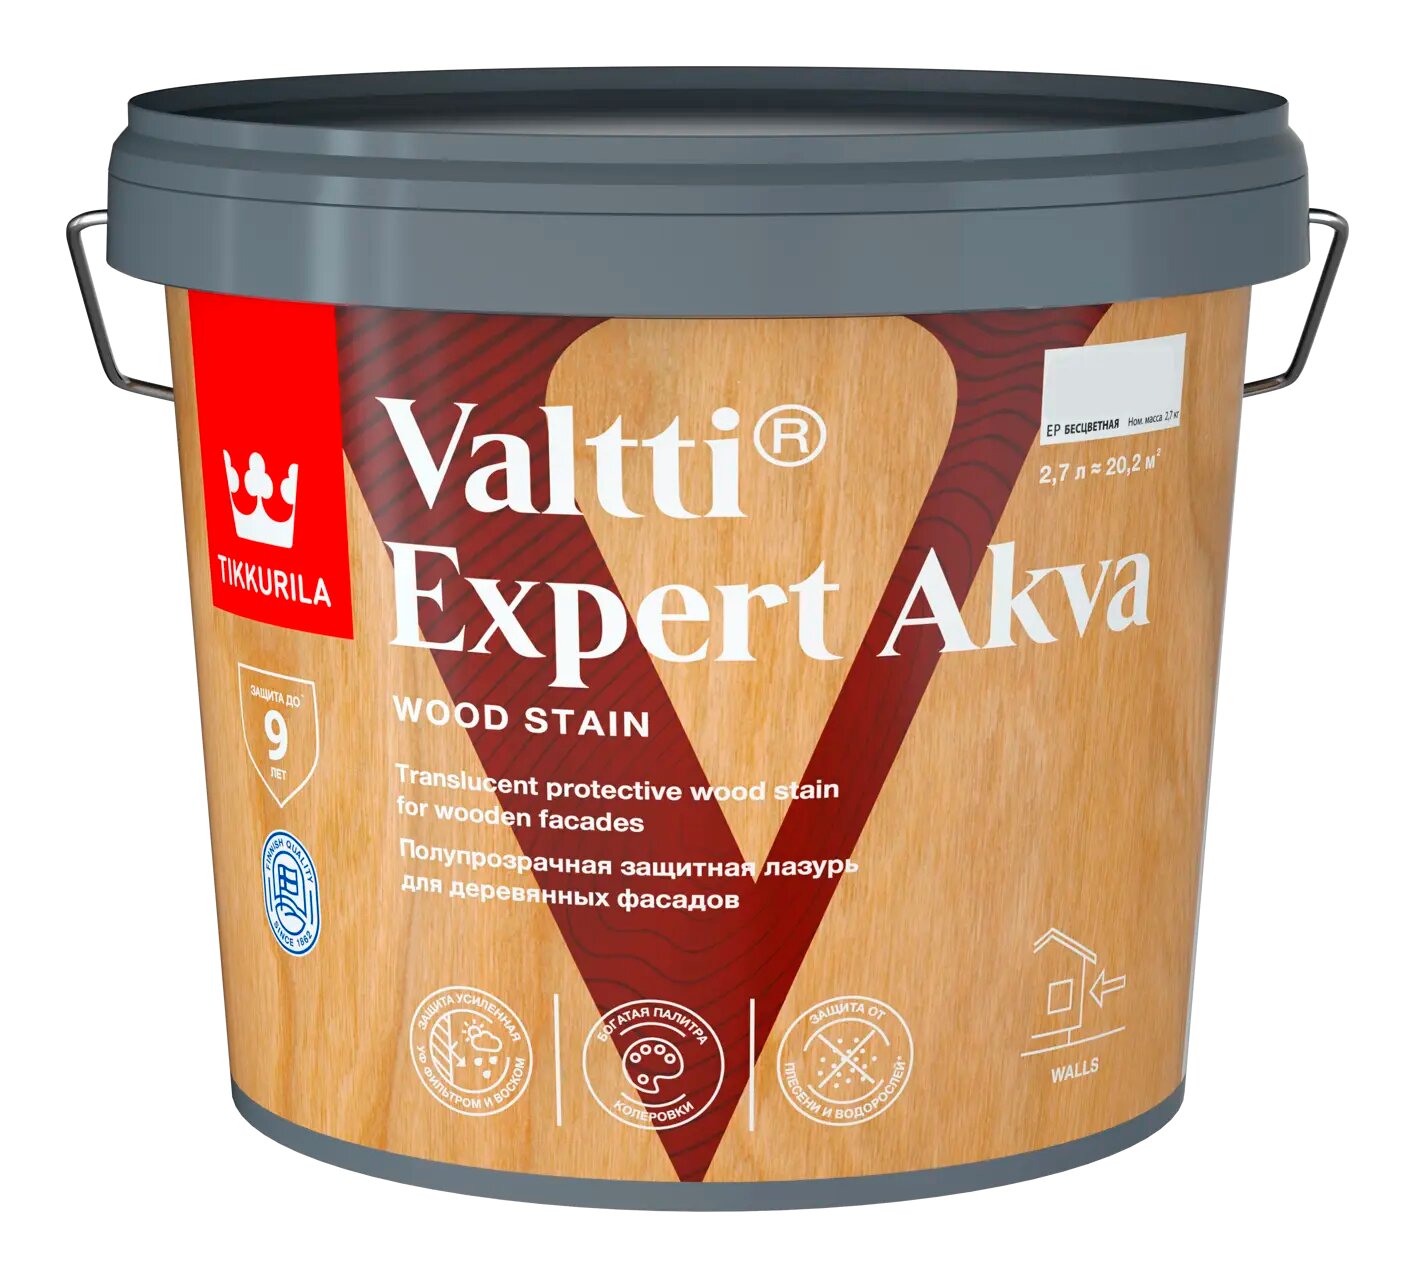 Антисептик защитно-декоративный Tikkurila Valtti Expert Akva тик полуматовый 2.7 л